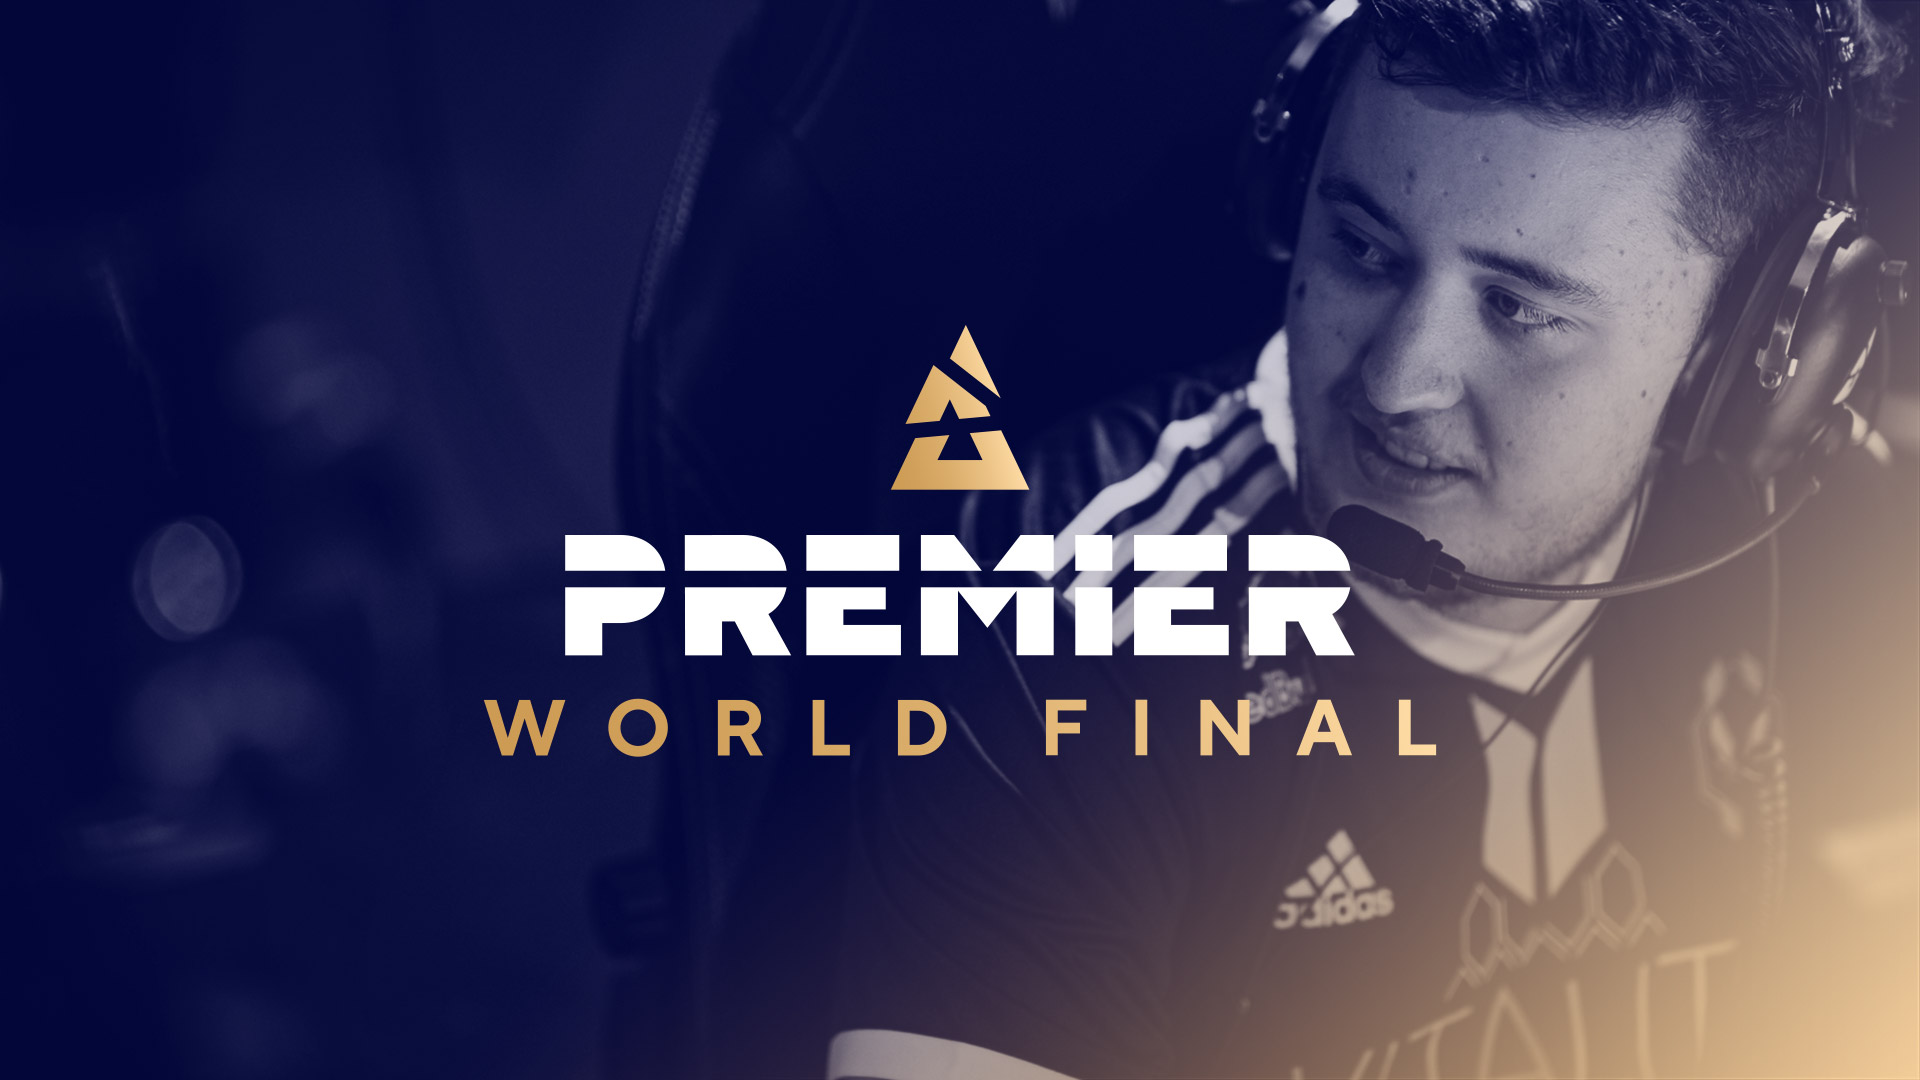 BLAST Premier: World Final 2023